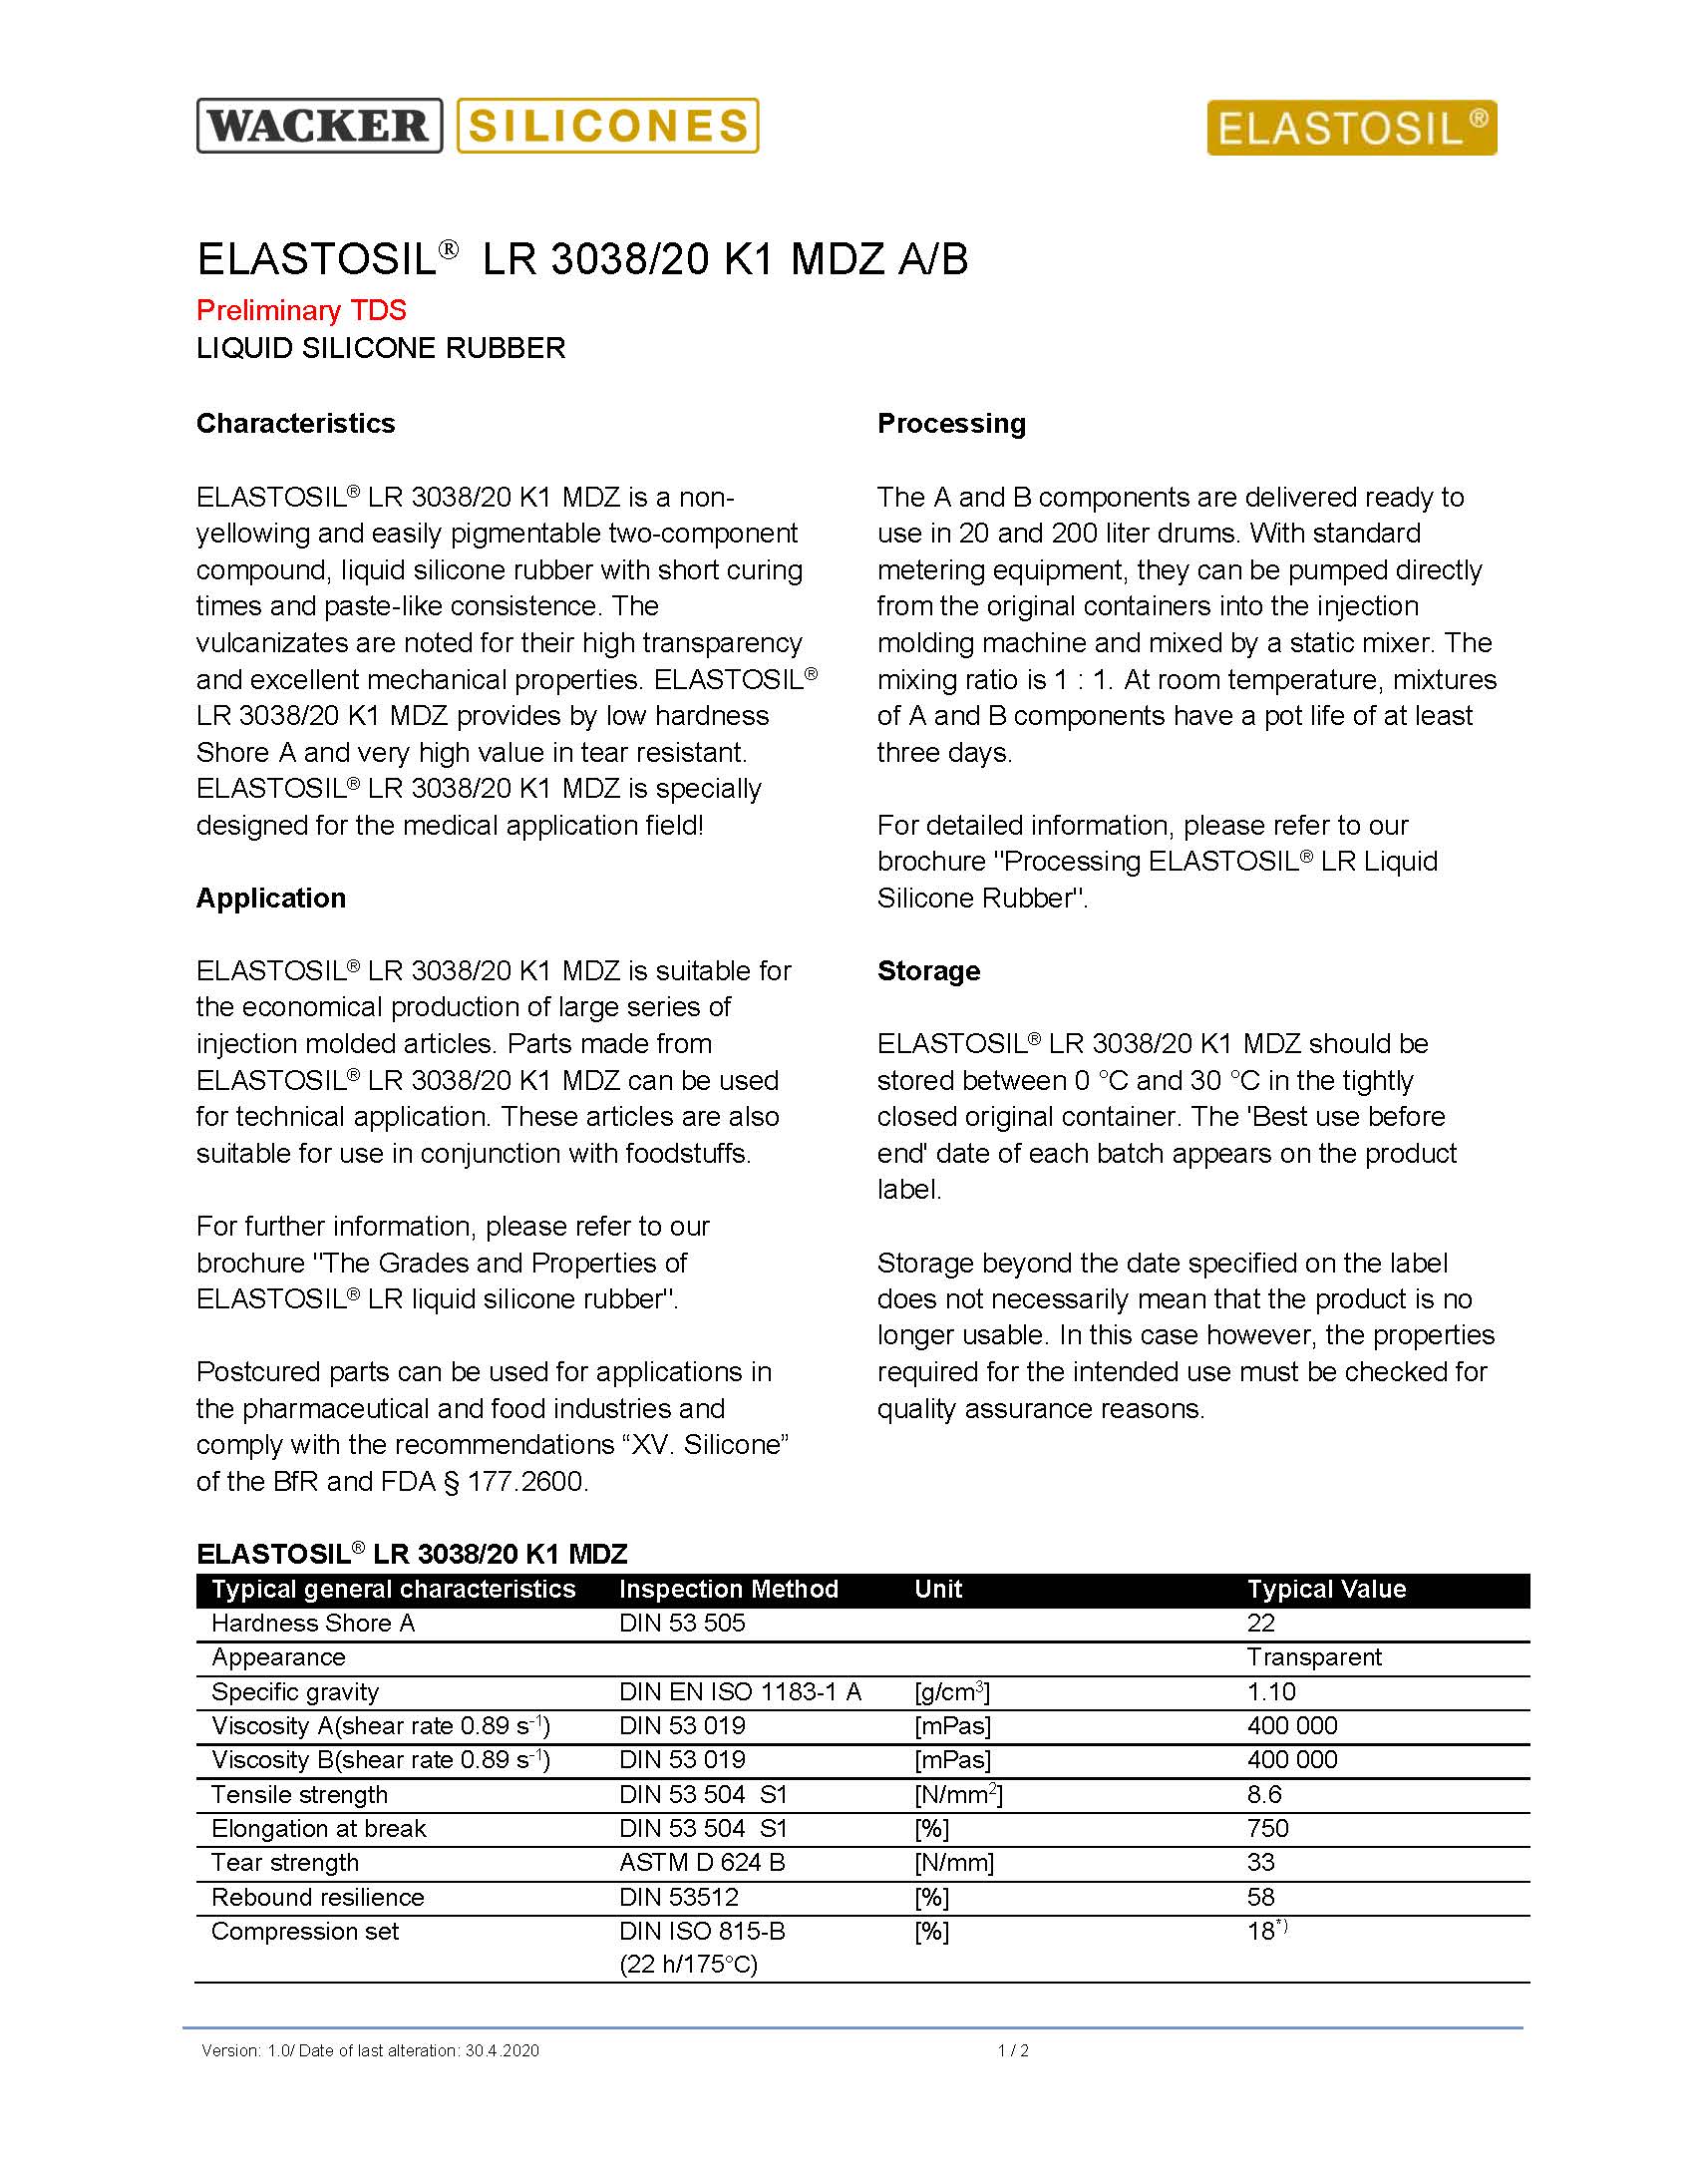 ELASTOSIL® LR 3038/20 K1 MDZ物性表